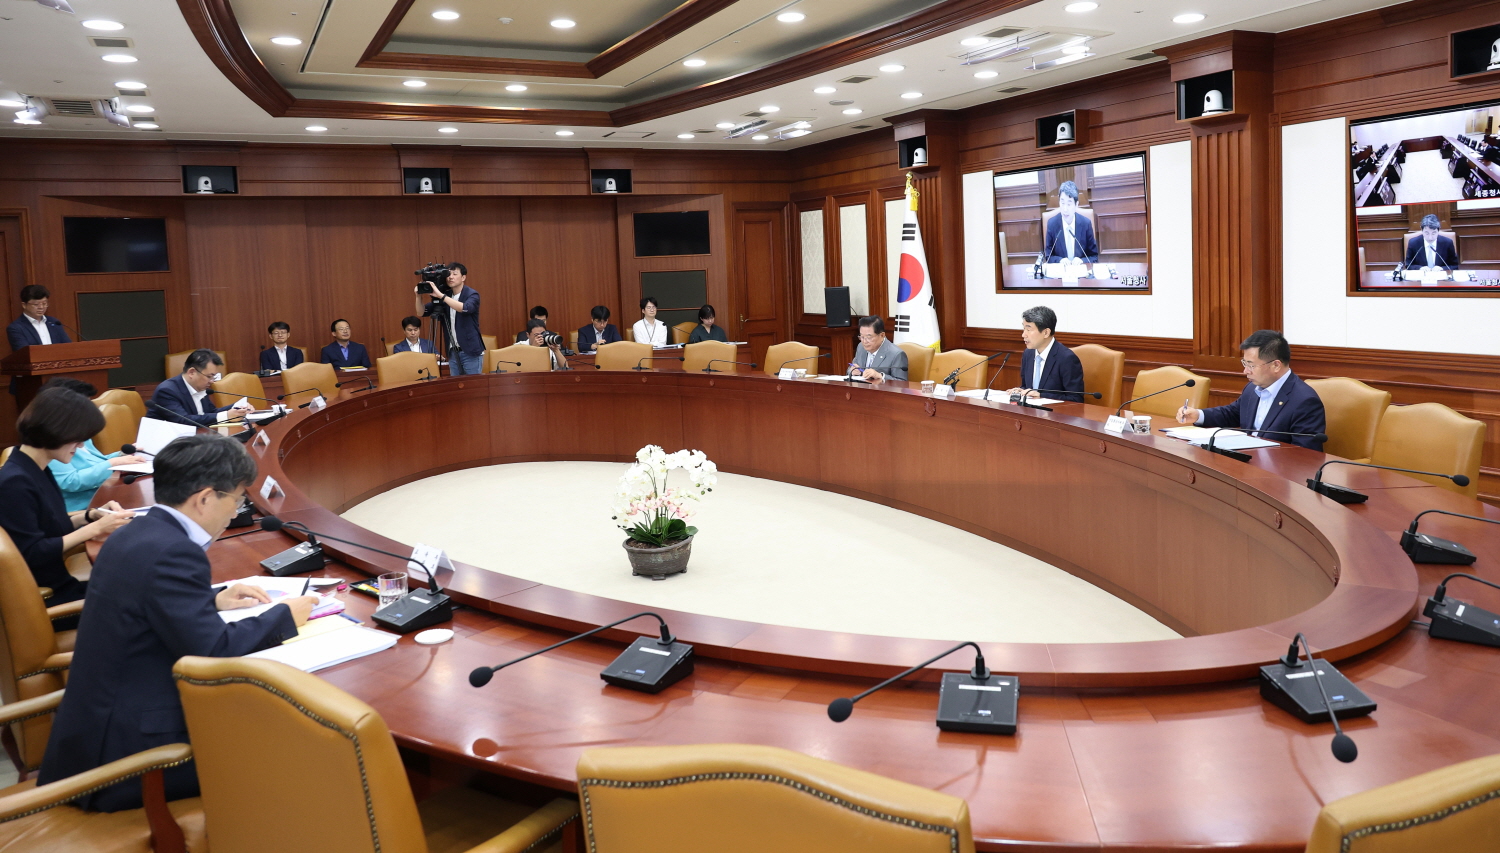 이주호 부총리 겸 교육부장관은 8월 16일(수) 정부서울청사에서 제7차 사회관계장관회의를 개최